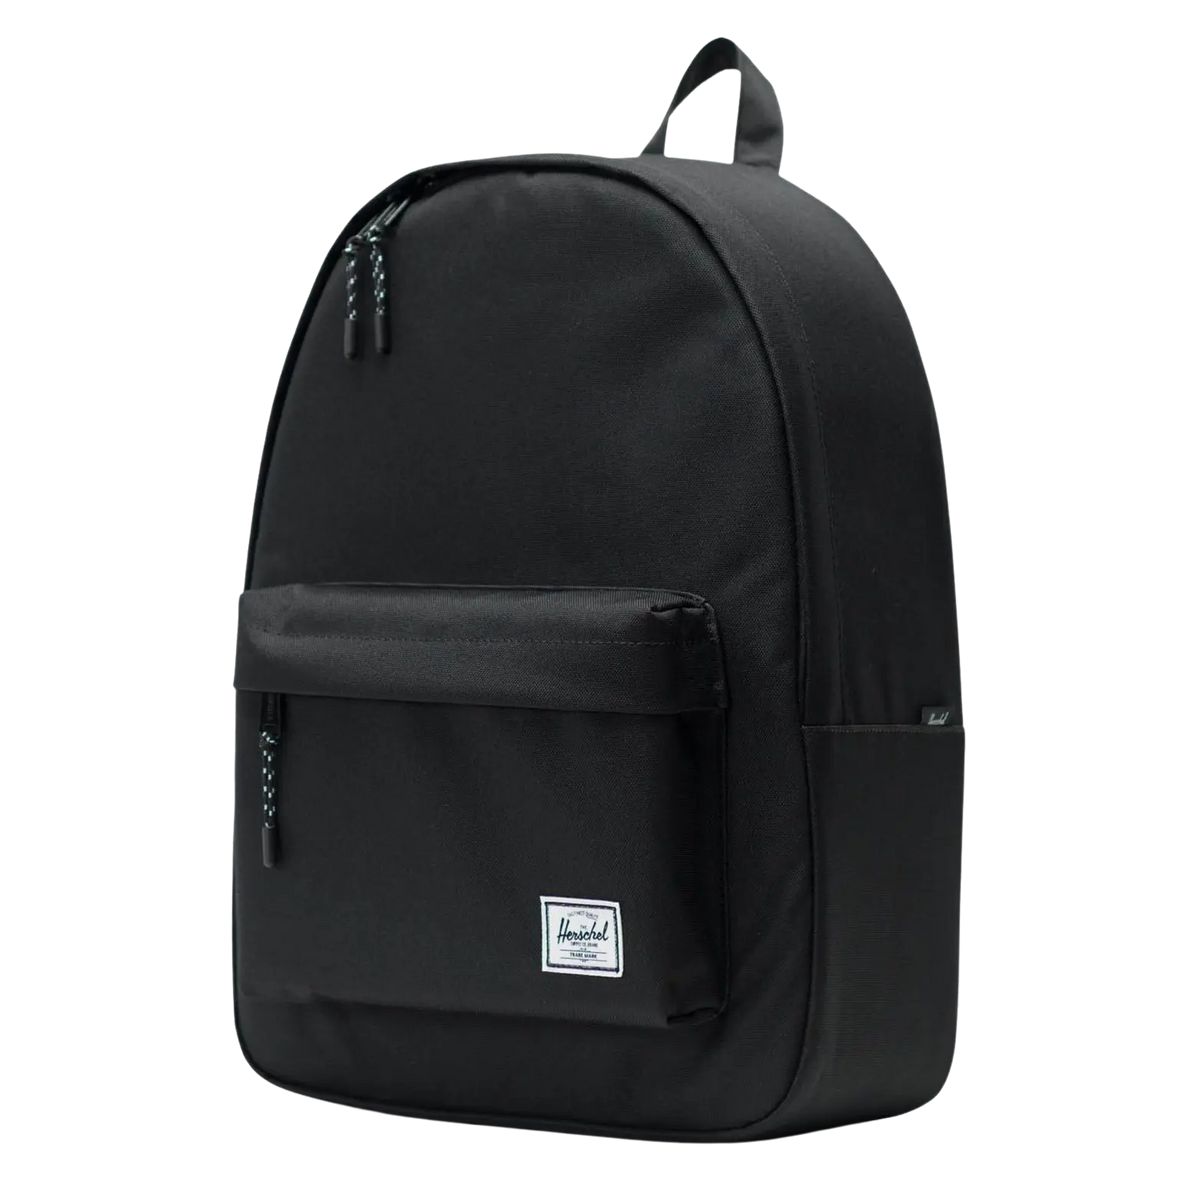 Hershel Classic Xl Backpack | Coes